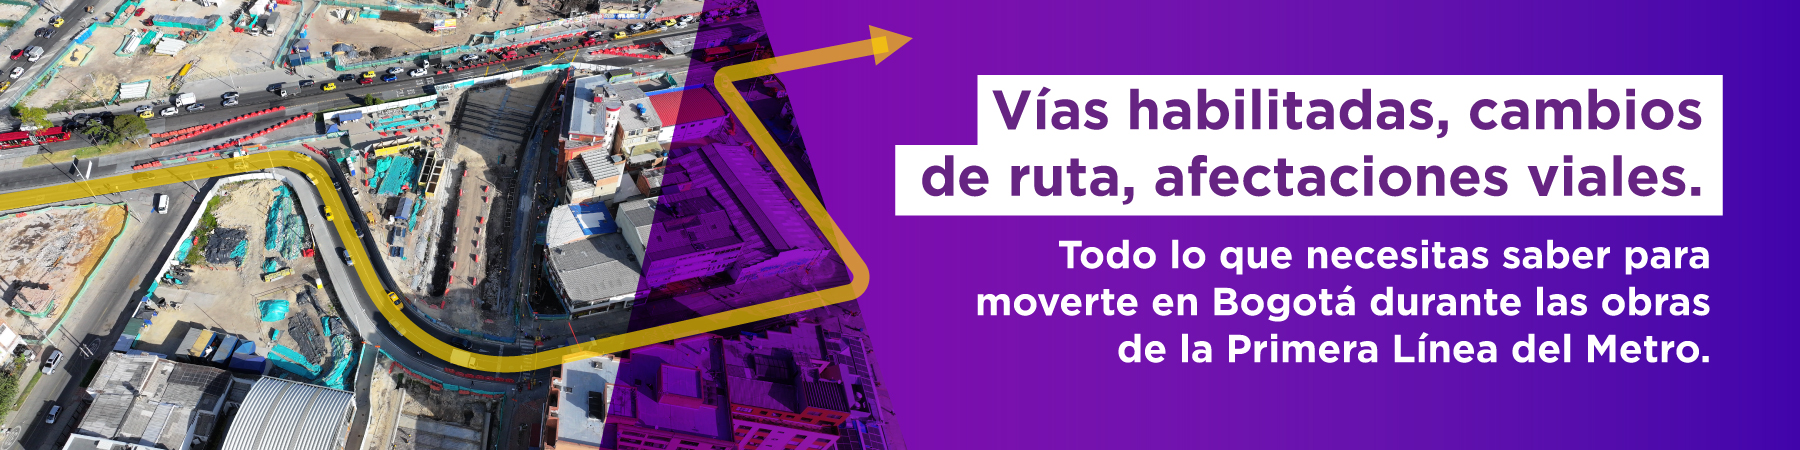 Vías habilitadas, cambios de ruta, afectaciones viales. Todo lo que necesitas saber para moverte en Bogotá durante las obras de la Primera Línea del Metro